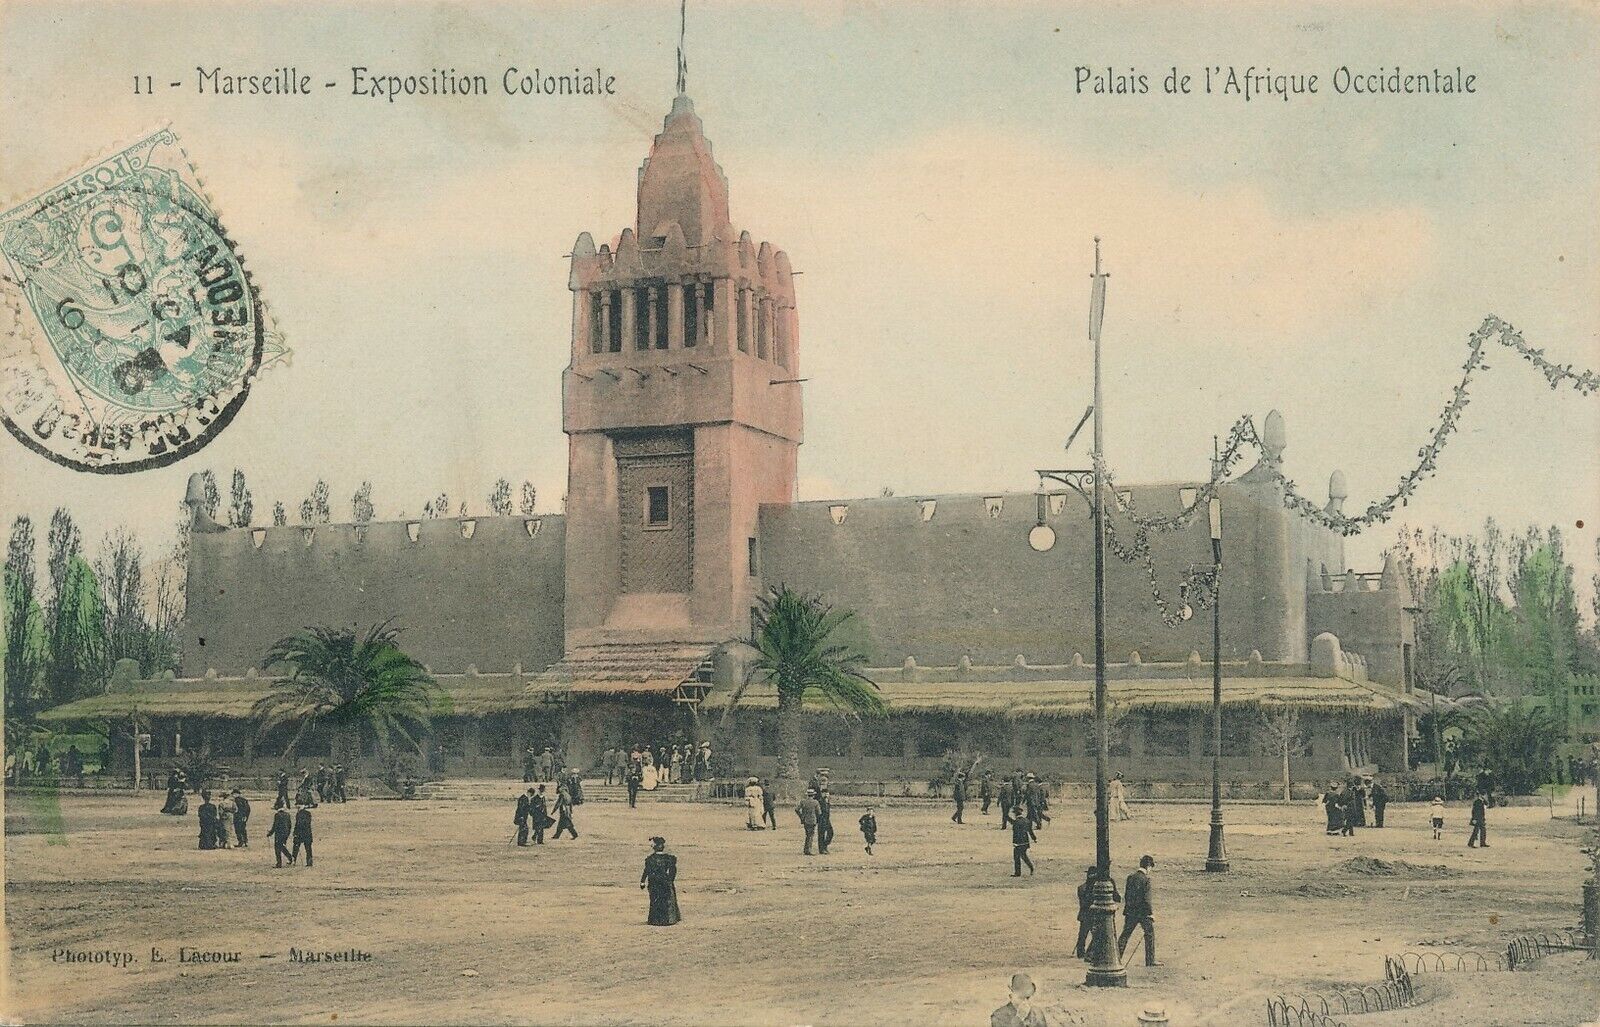 1906 Marseille Exposition Coloniale Palais de l’Afrique Occidentale